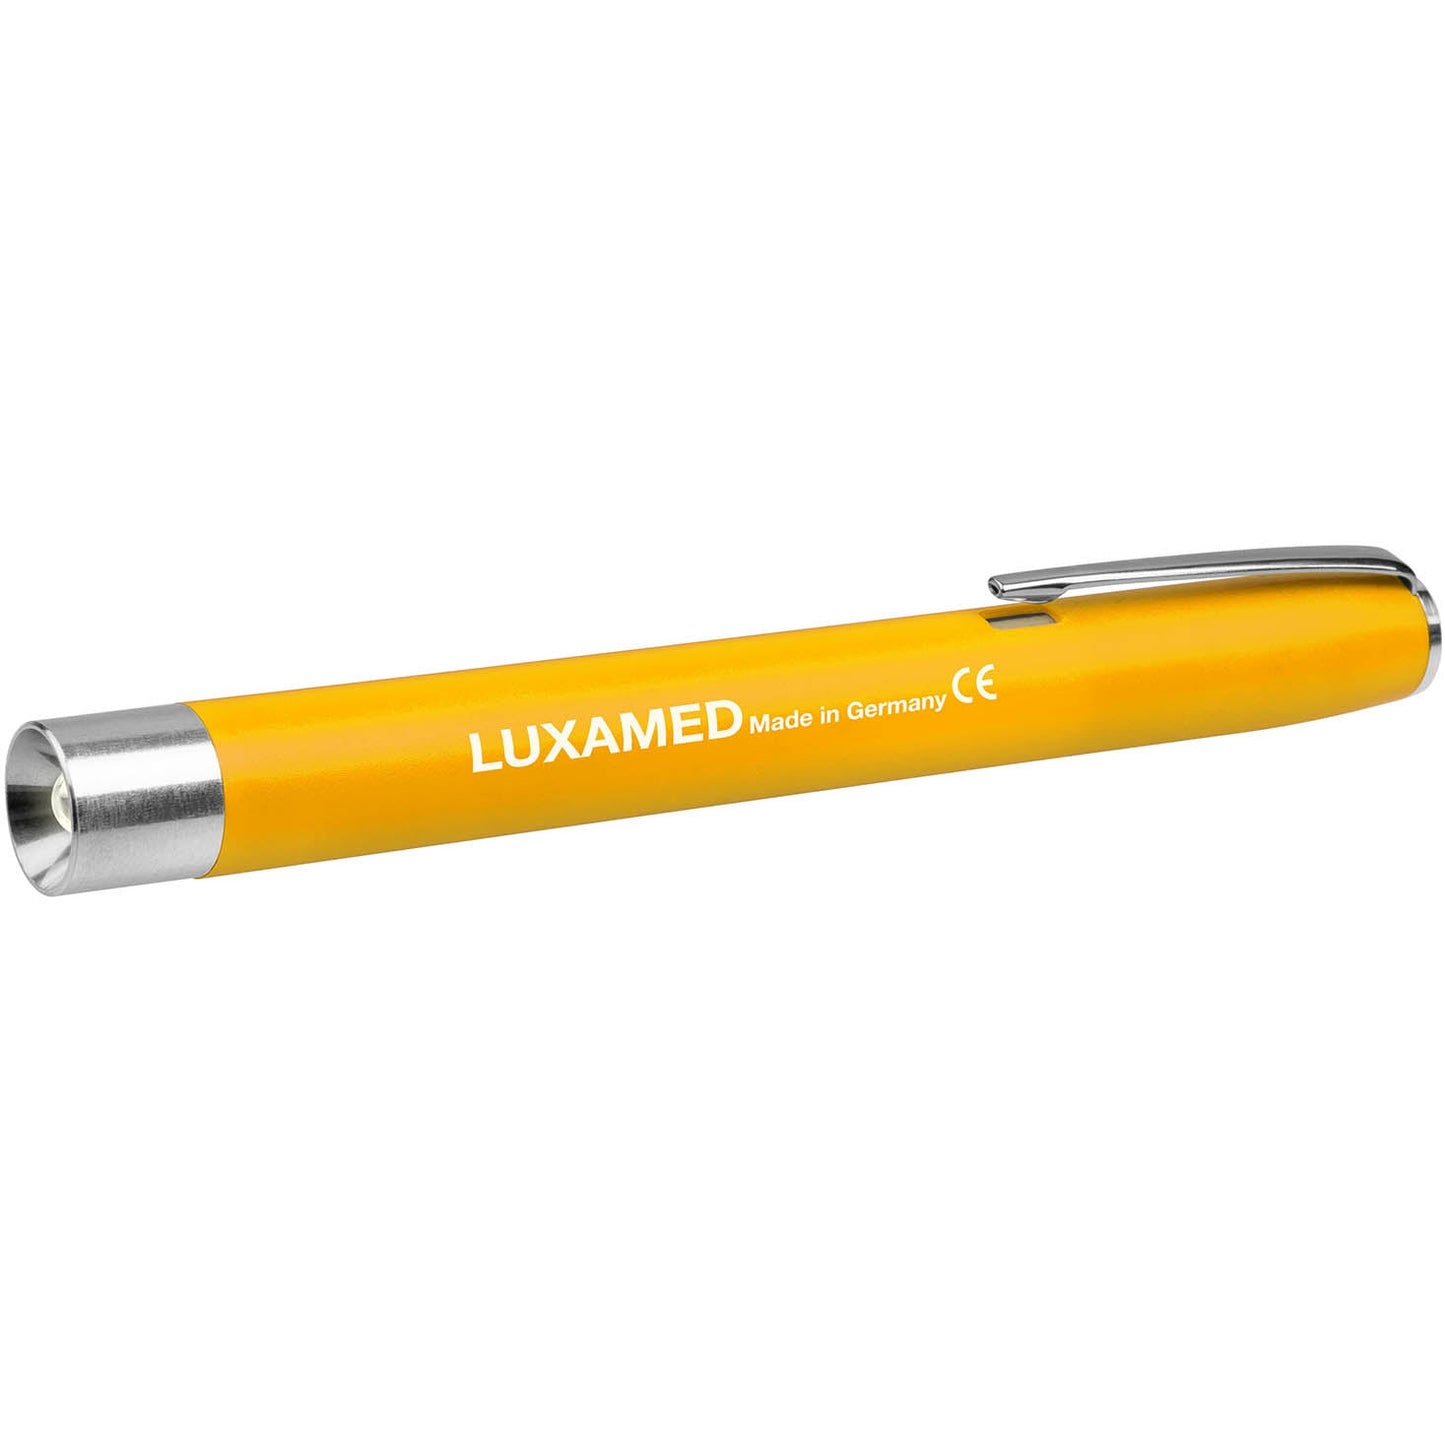 Luxamed High Power LED Pen Light